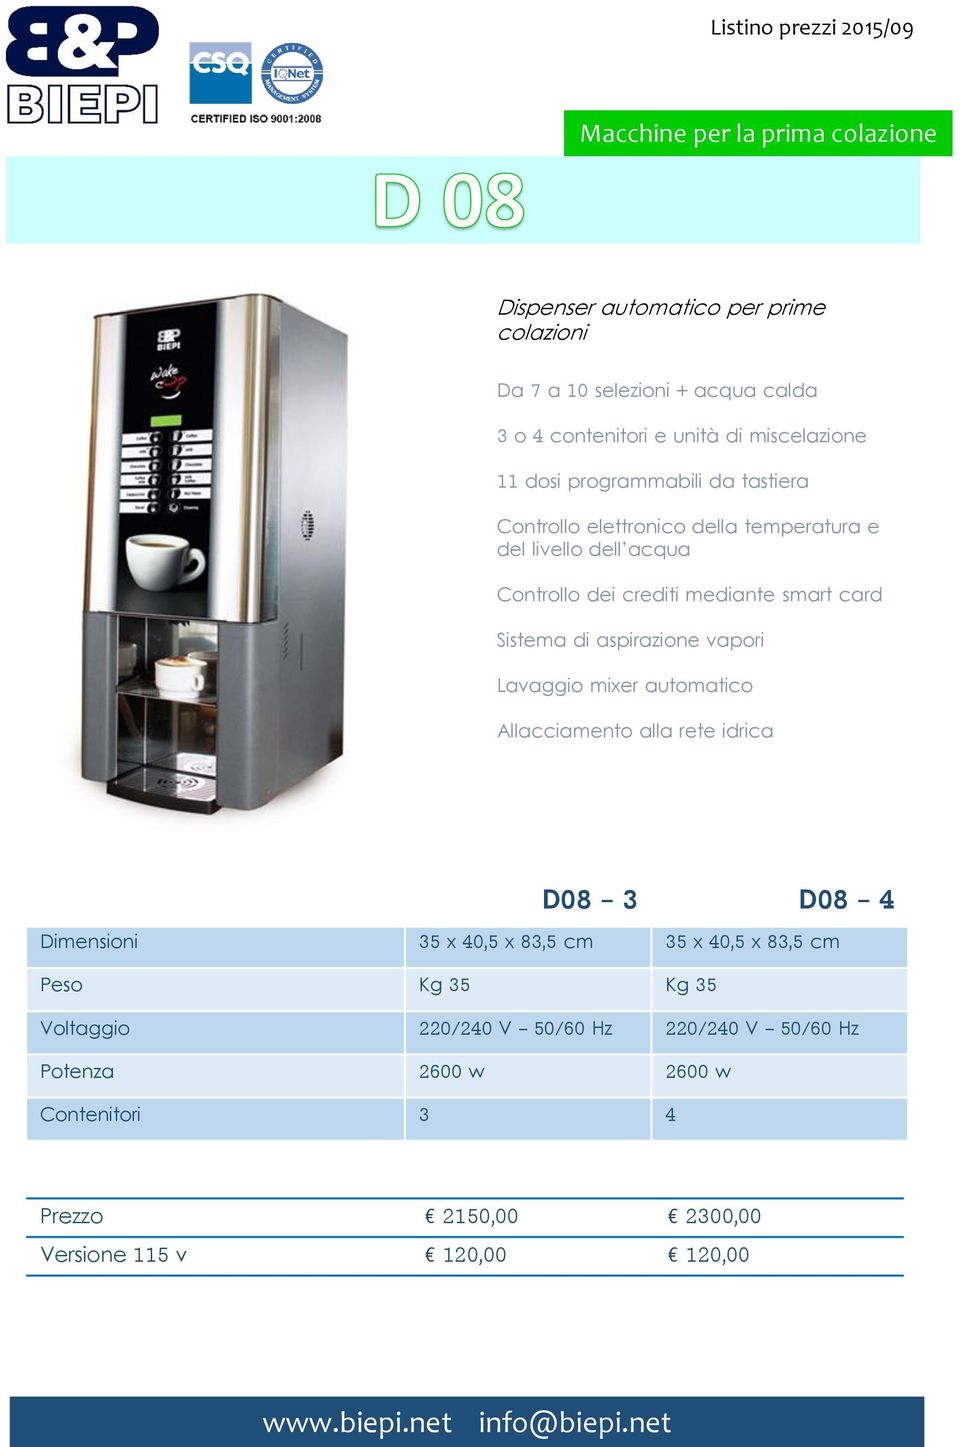 dei crediti mediante smart card Sistema di aspirazione vapori Lavaggio mixer automatico Allacciamento alla rete idrica D08-3 D08-4